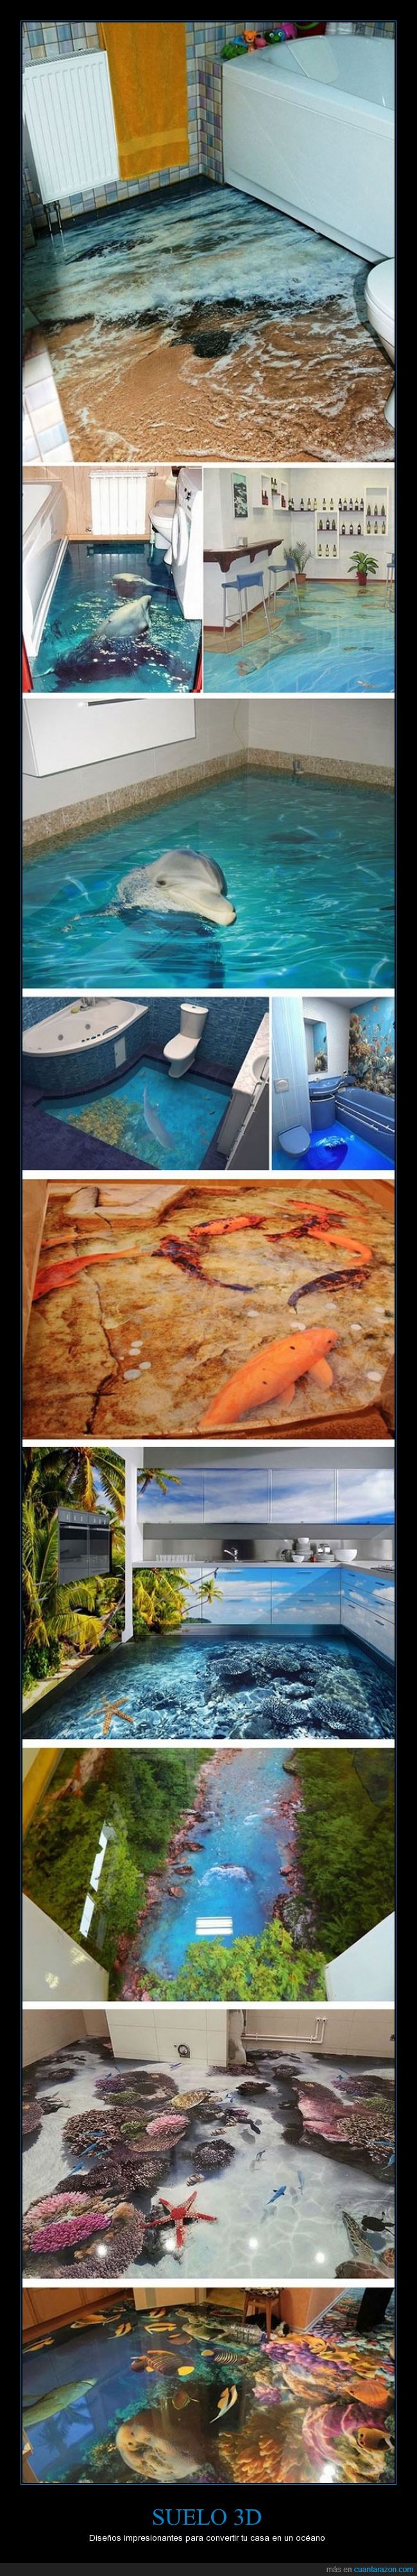 suelo,fotografia,3D,oceano,fondo,mar,agua,marino,marítimo,coral,decoración